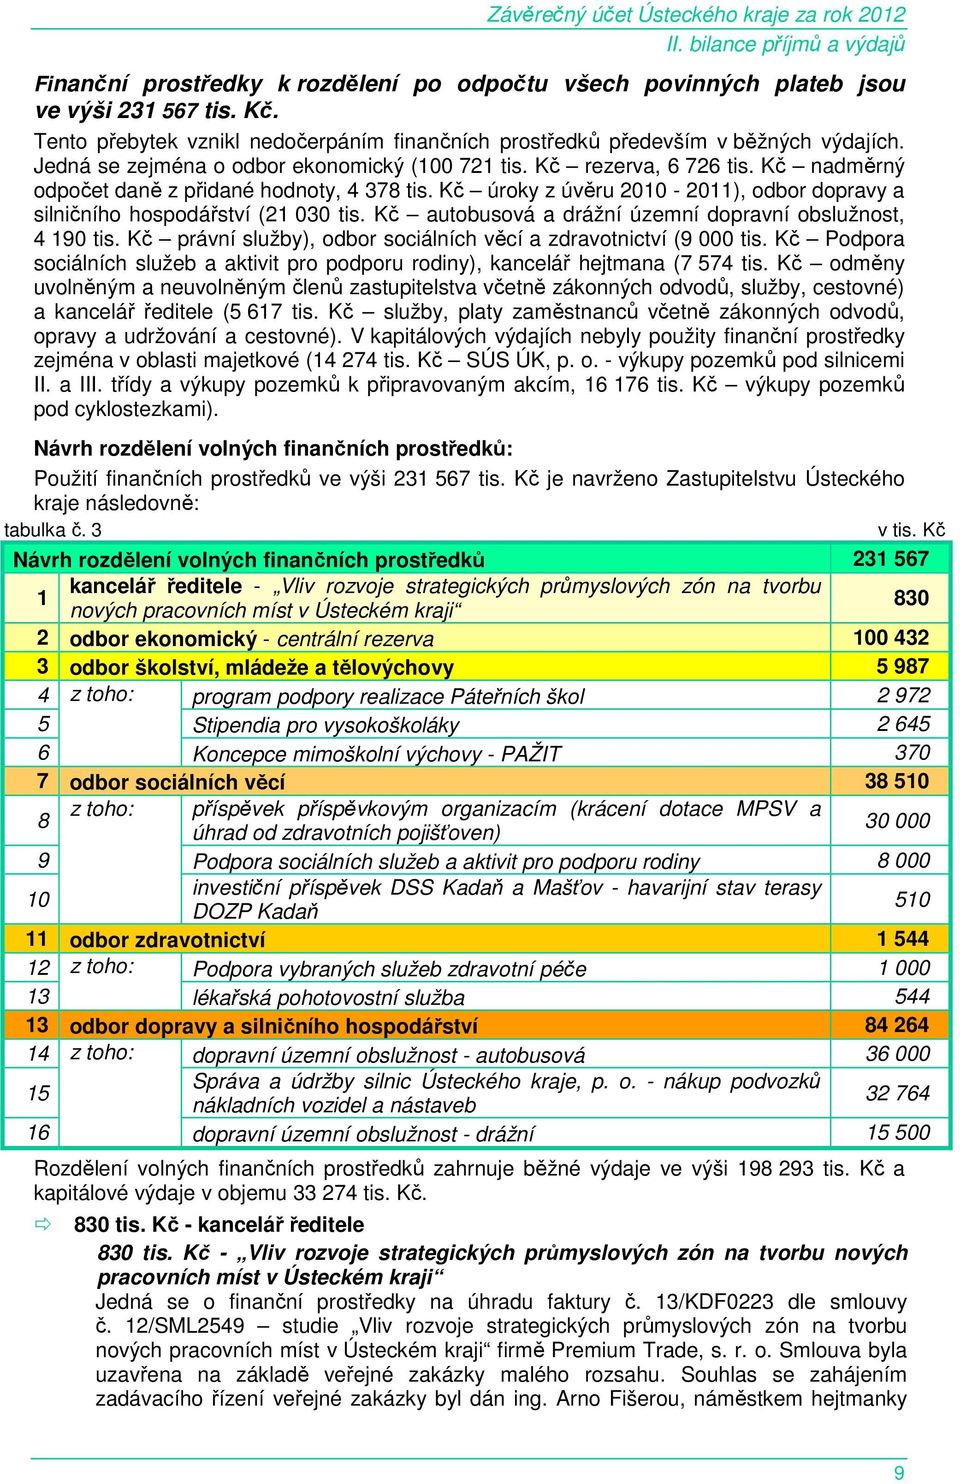 Kč úroky z úvěru 2010-2011), odbor dopravy a silničního hospodářství (21 030 tis. Kč autobusová a drážní územní dopravní obslužnost, 4 190 tis.